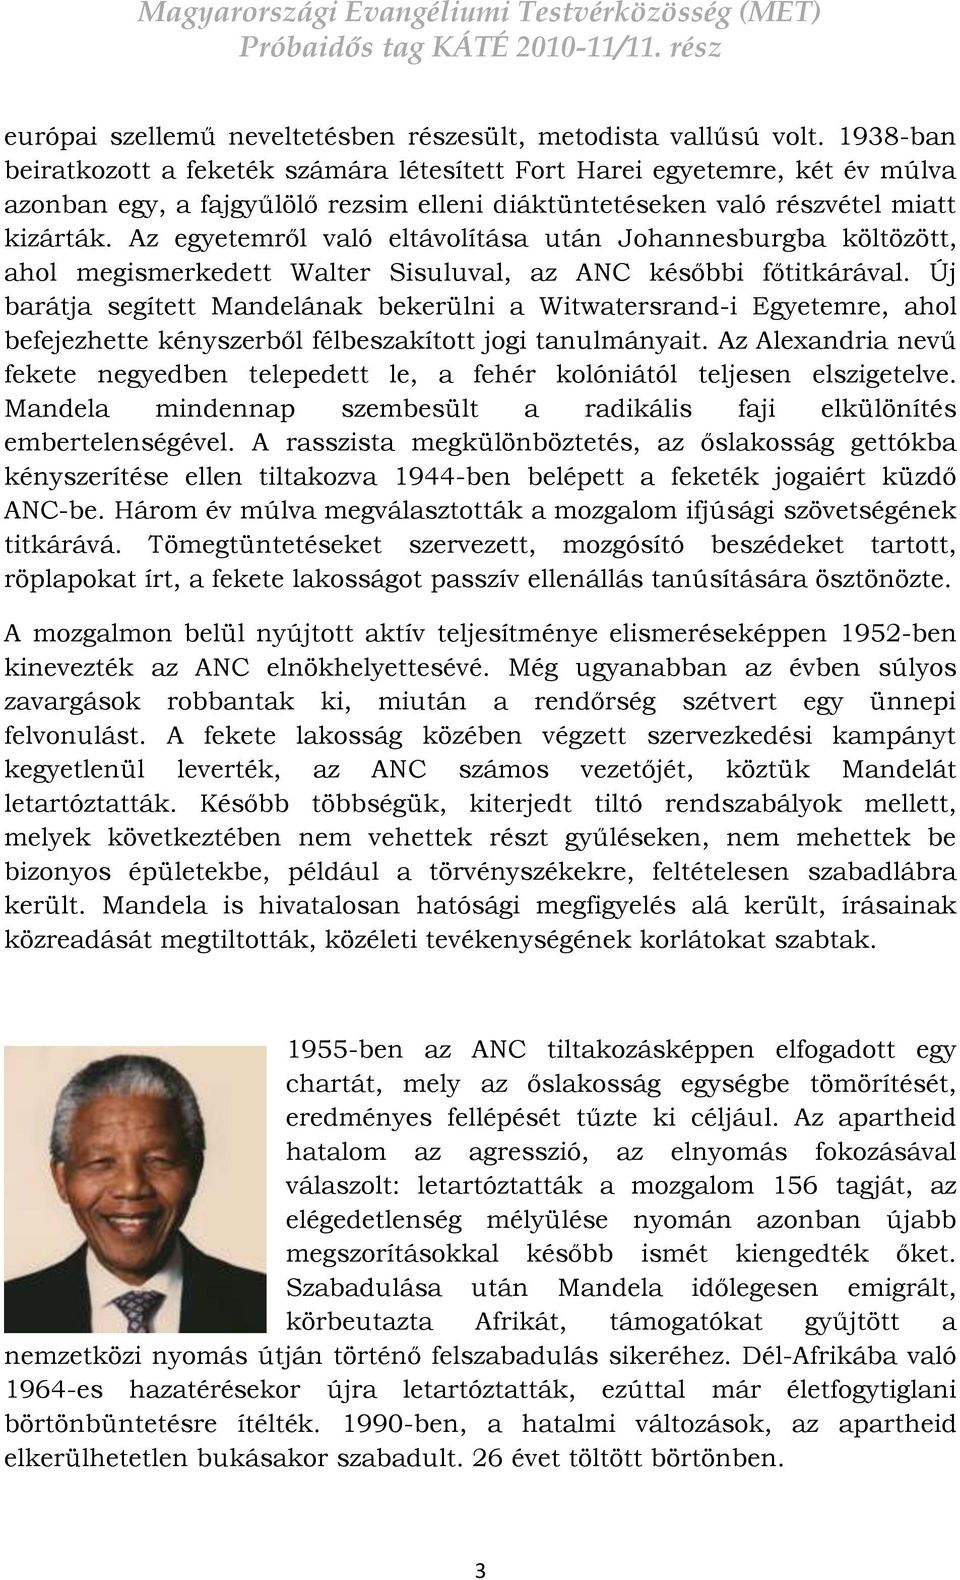 Az egyetemről való eltávolítása után Johannesburgba költözött, ahol megismerkedett Walter Sisuluval, az ANC későbbi főtitkárával.